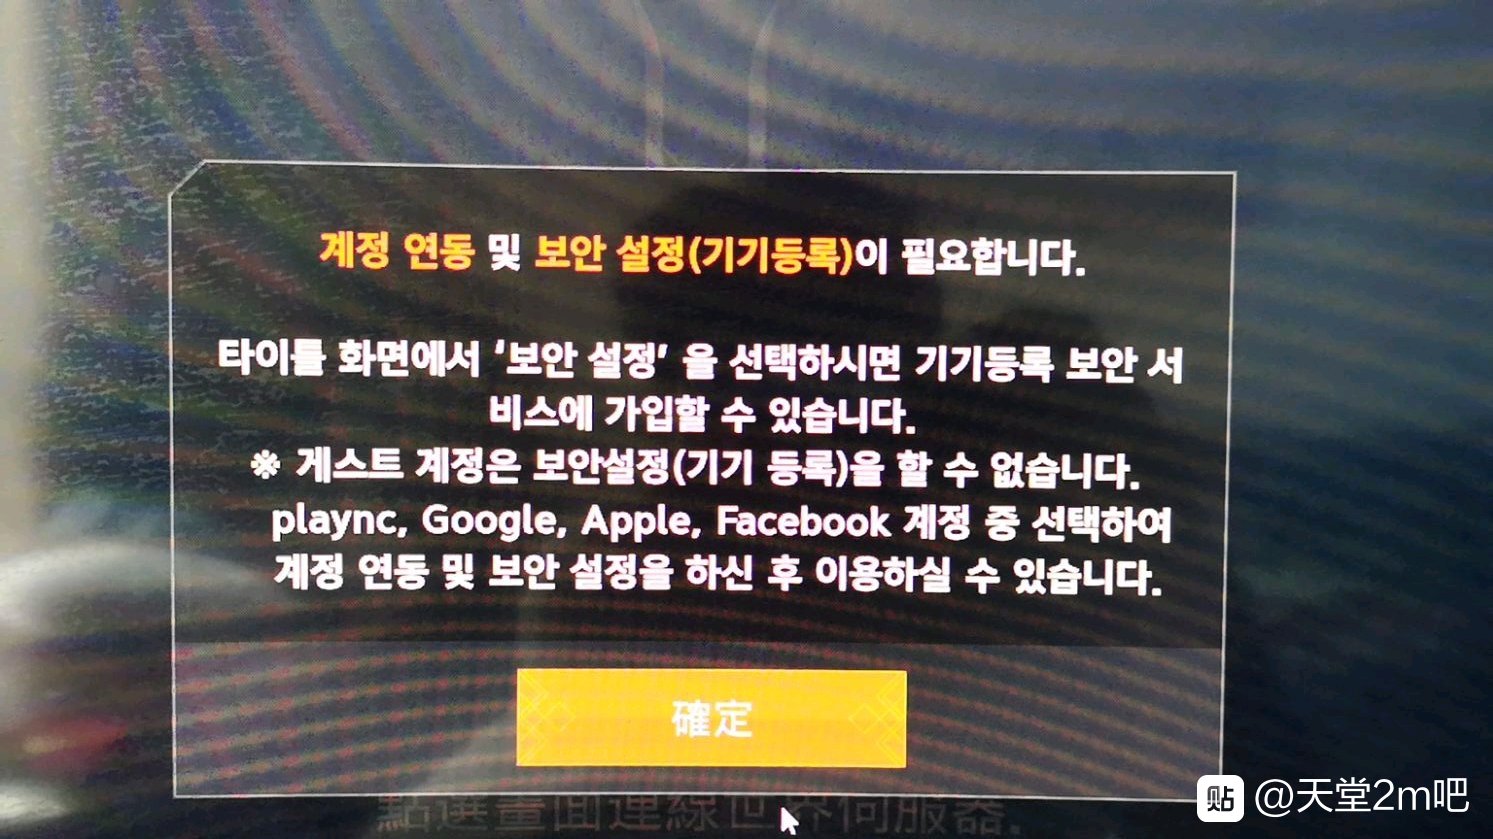 下载的12版本，点击选区就显示下面的提示，是要绑定验证账号么？没有韩国手机号怎么办？